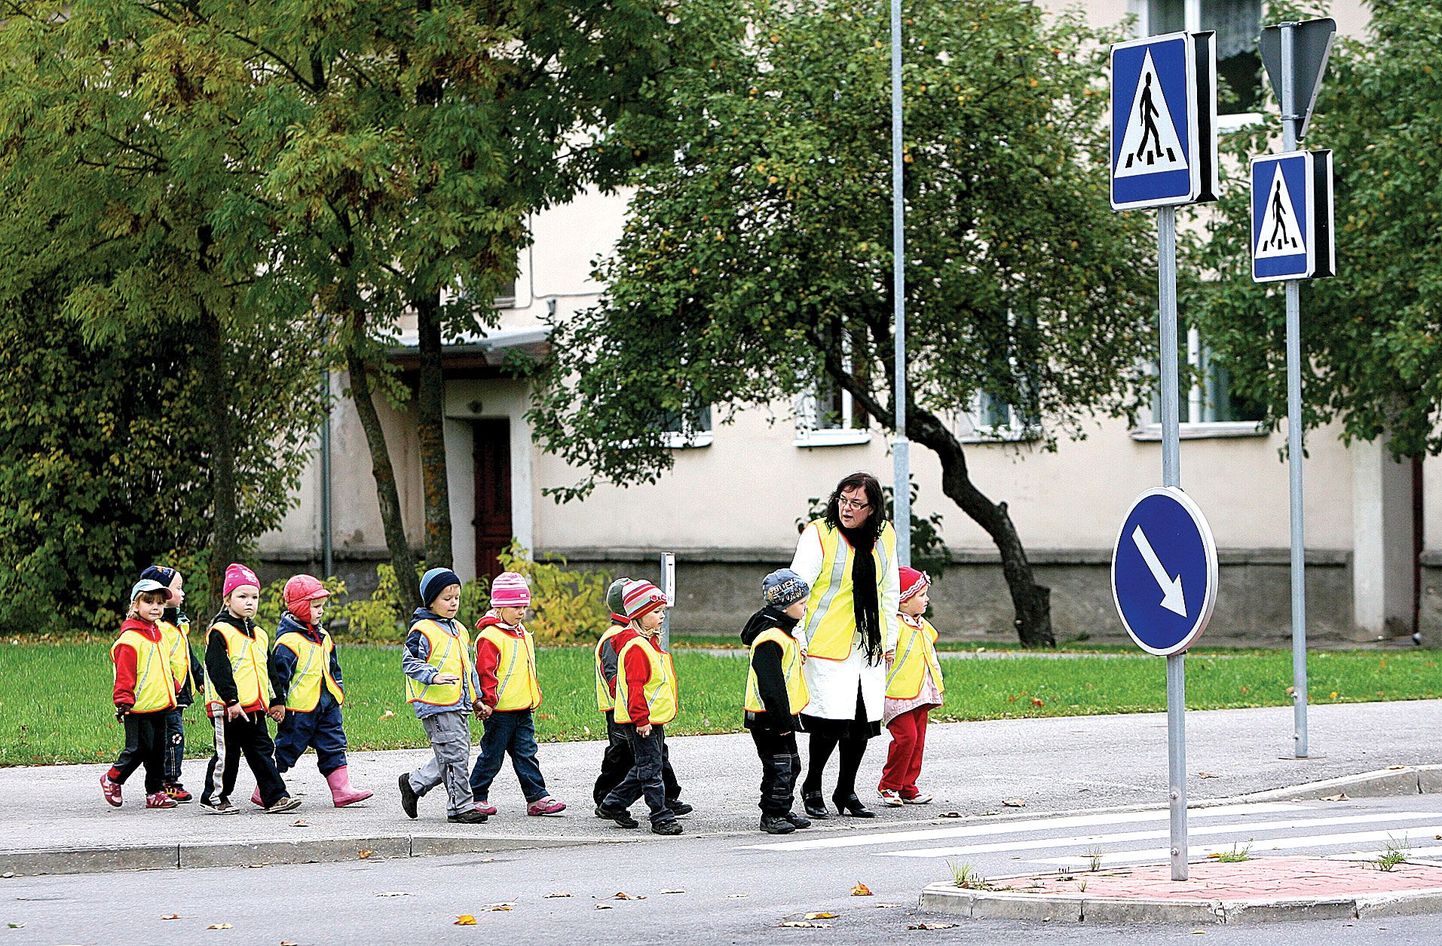 Kuigi uus liiklusseadus nõuab lasterühma saatjalt ohutusvesti kandmist alles järgmisest aastast, oli Tartu Meelespea lasteaia Pääsusabade rühma õpetajal Katrin Jakobson-Värnikul nõutav vest seljas juba eilsel jalutuskäigul.